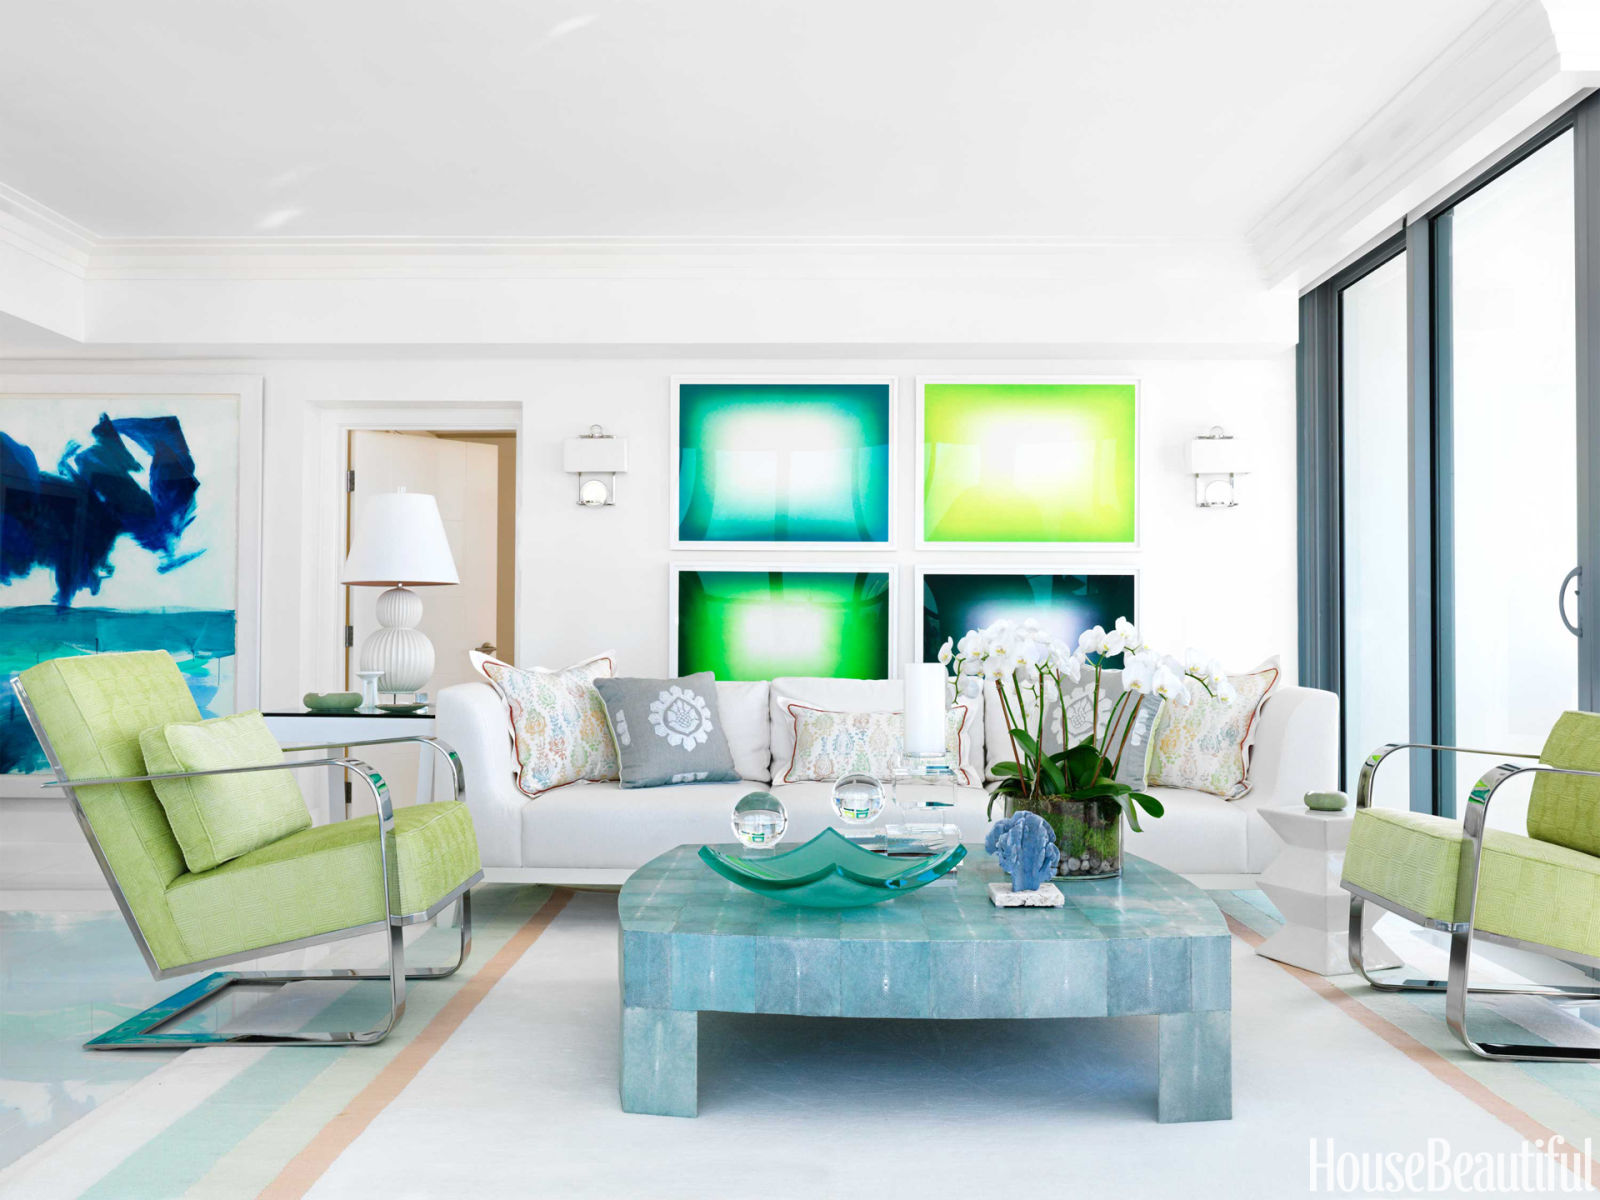 50 Best Living Room Design Ideas for 2017